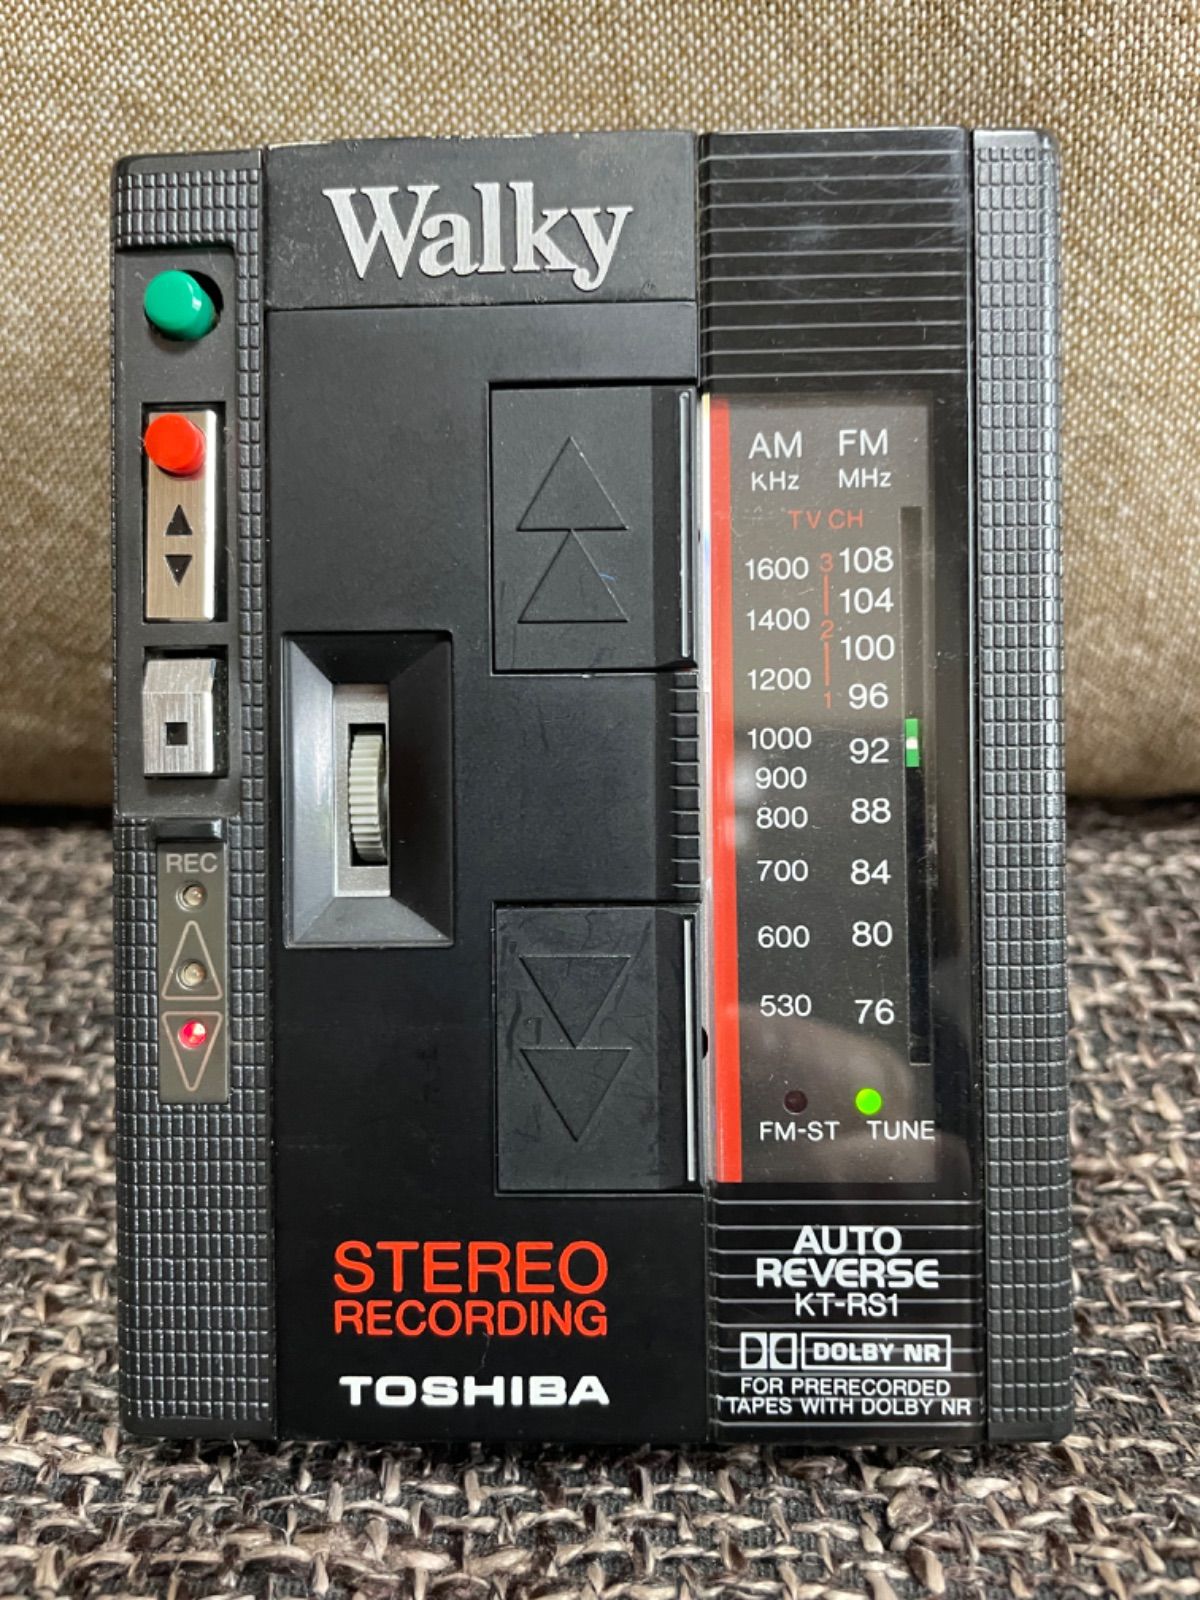 東芝ステレオ カセットレコーダーWalky RS録音マイクなども揃っています